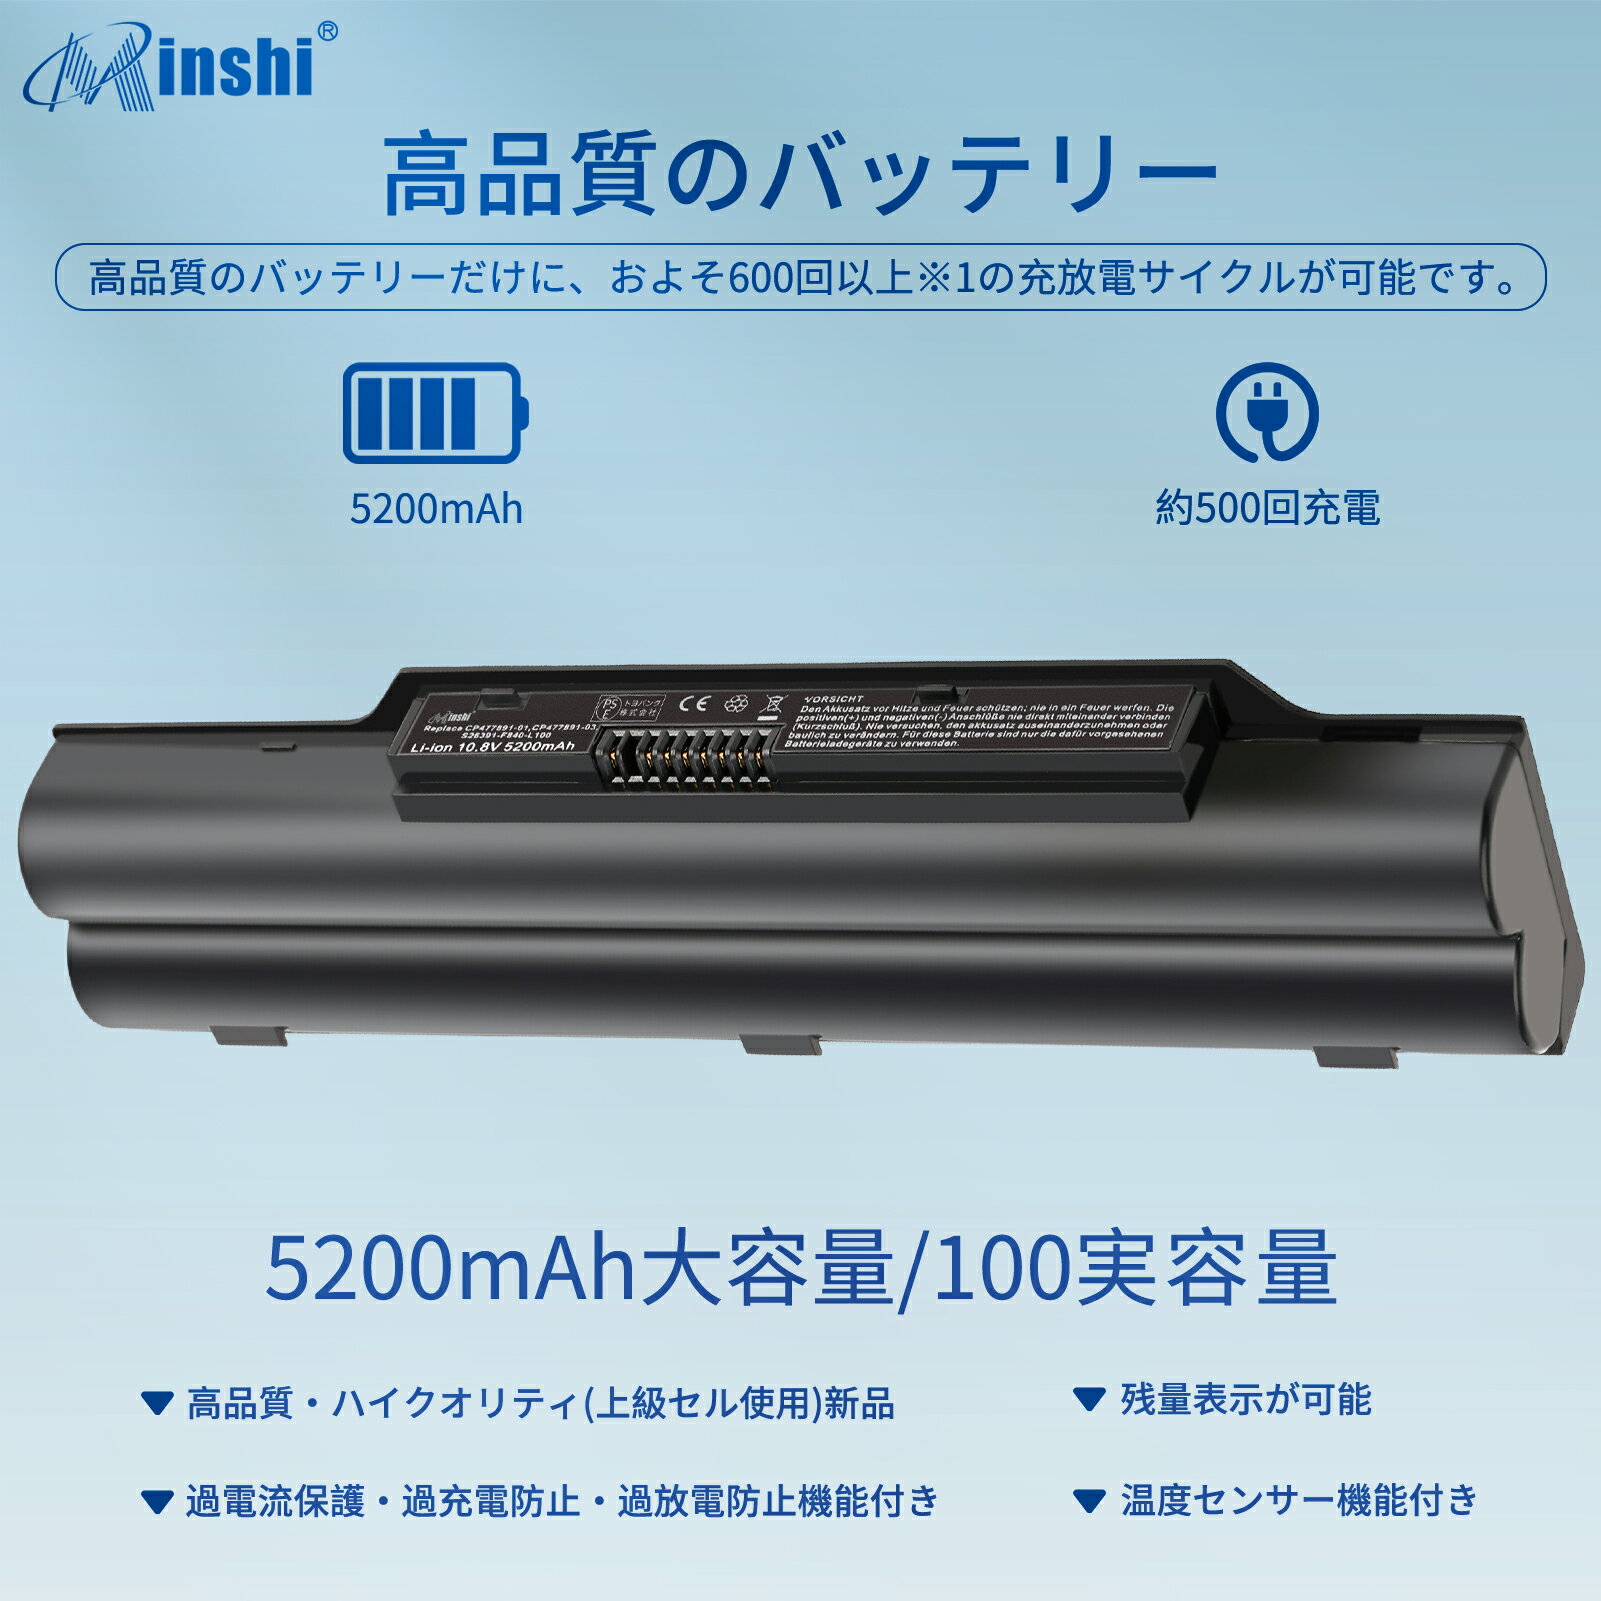 minshi 新品 Fujitsu LifeBook LH52/C 互換バッテリー 対応 高品質交換用電池パック PSE認証 1年間保証 5200mAh 2